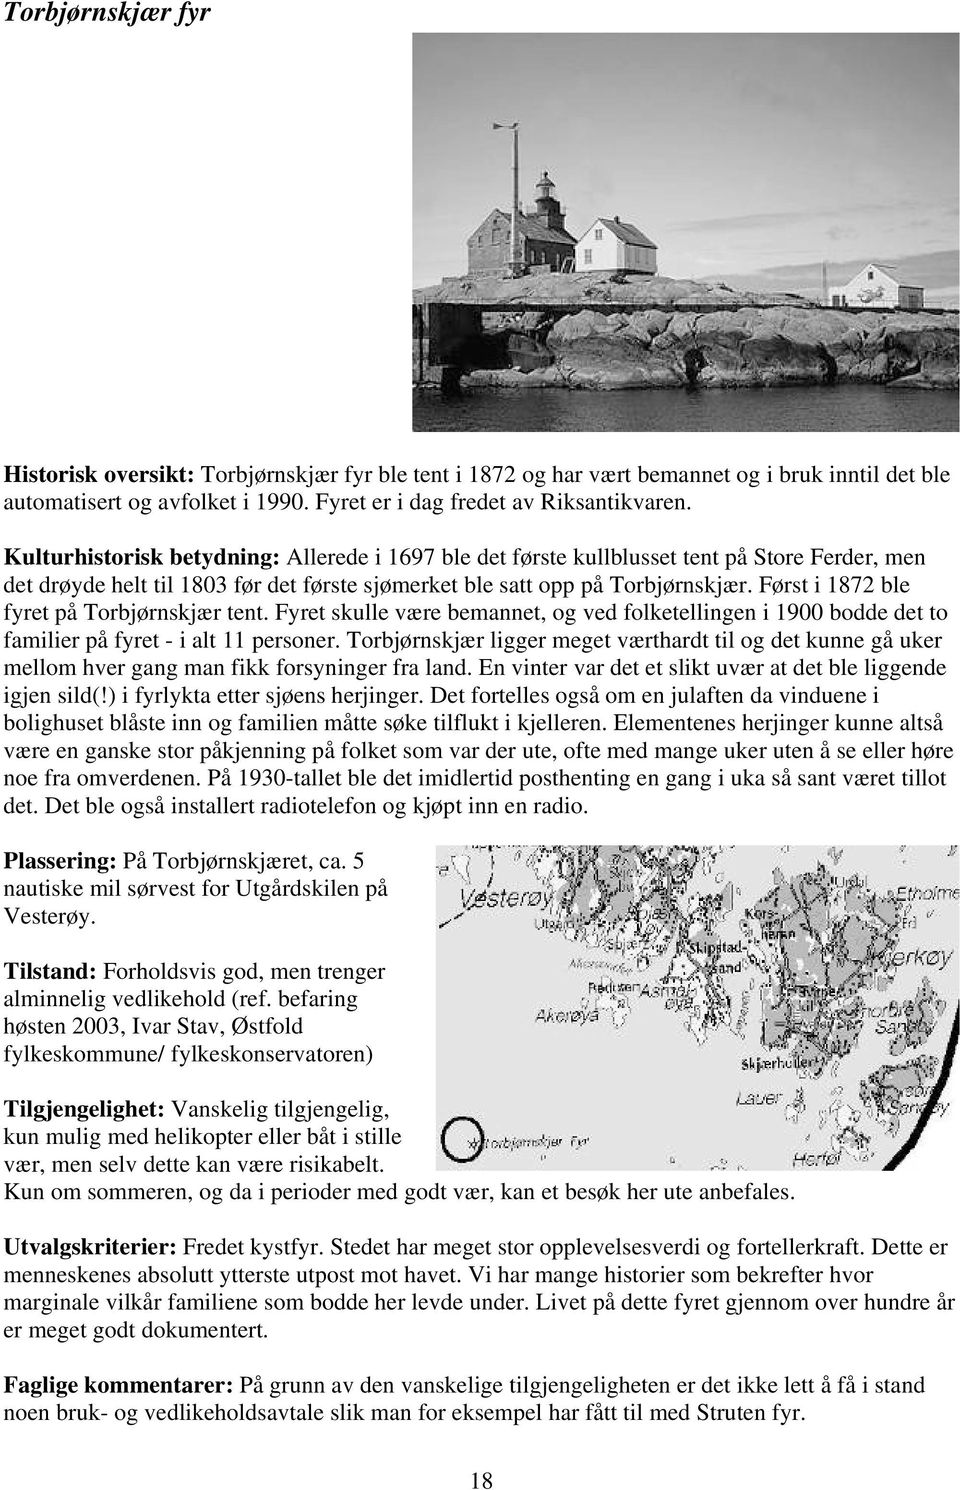 Først i 1872 ble fyret på Torbjørnskjær tent. Fyret skulle være bemannet, og ved folketellingen i 1900 bodde det to familier på fyret - i alt 11 personer.